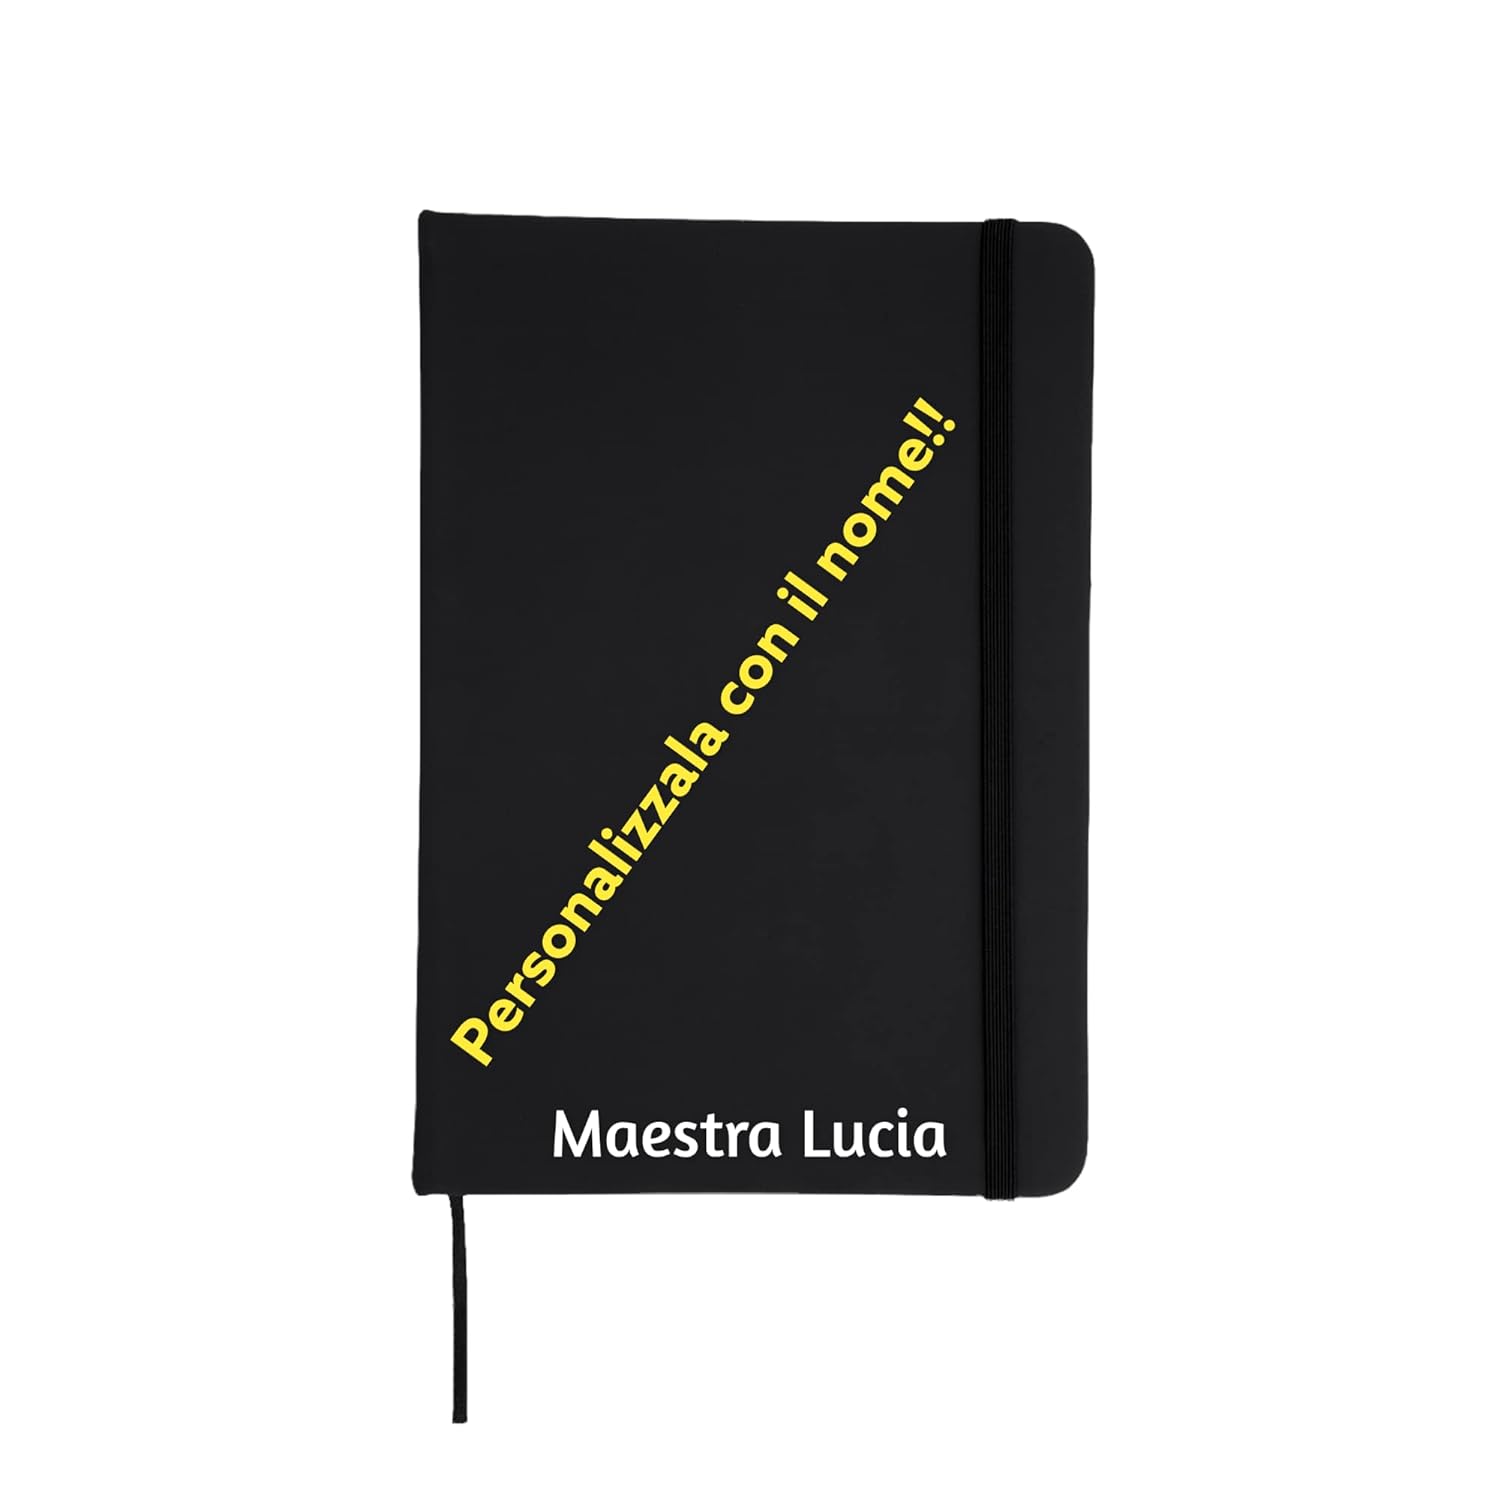 Stile Moleskine Classic Notebook personalizzato con dedica alla Maesrtra, Taccuino o Quaderno, Copertina Rigida e Chiusura ad Elastico, Formato Large 14,7 x 21 cm, 100 Pagine